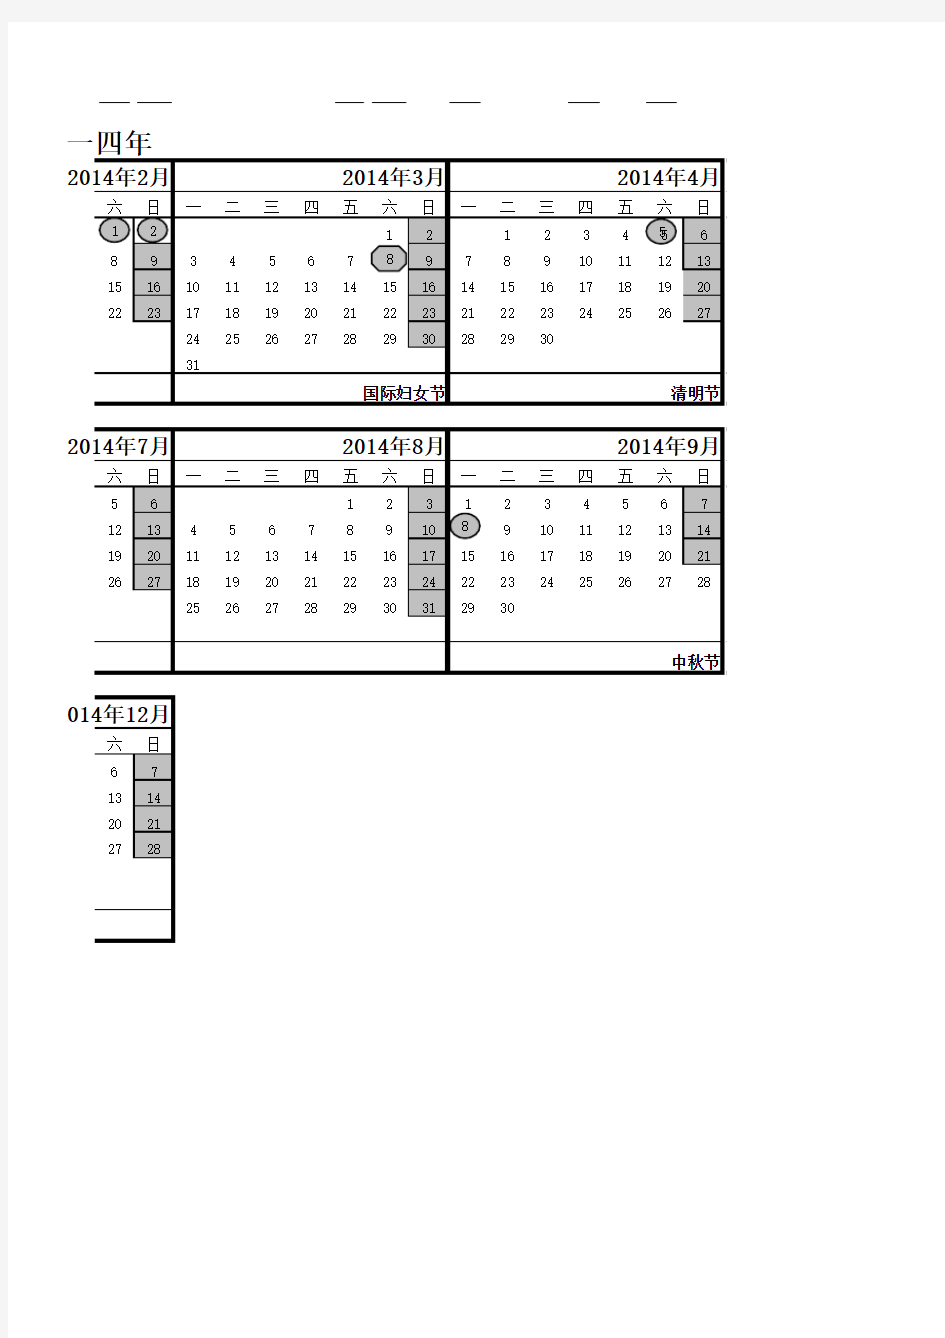 2014年度工作日历(含大小周)调休放假安排